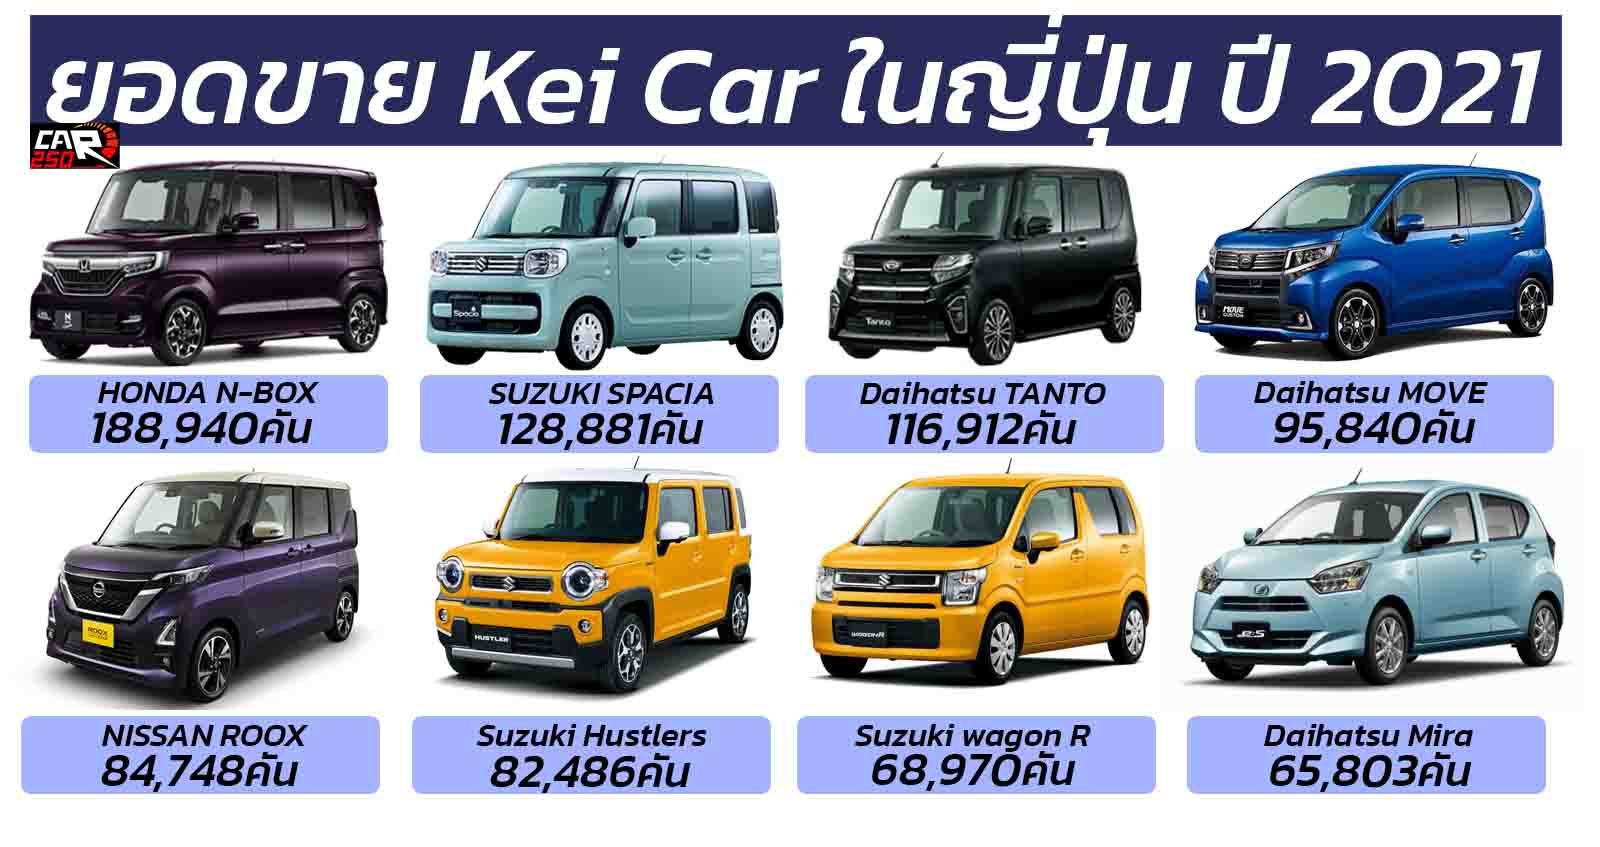 10 อันดับ ยอดขายรถยนต์ Kei Car ในญี่ปุ่น 2021